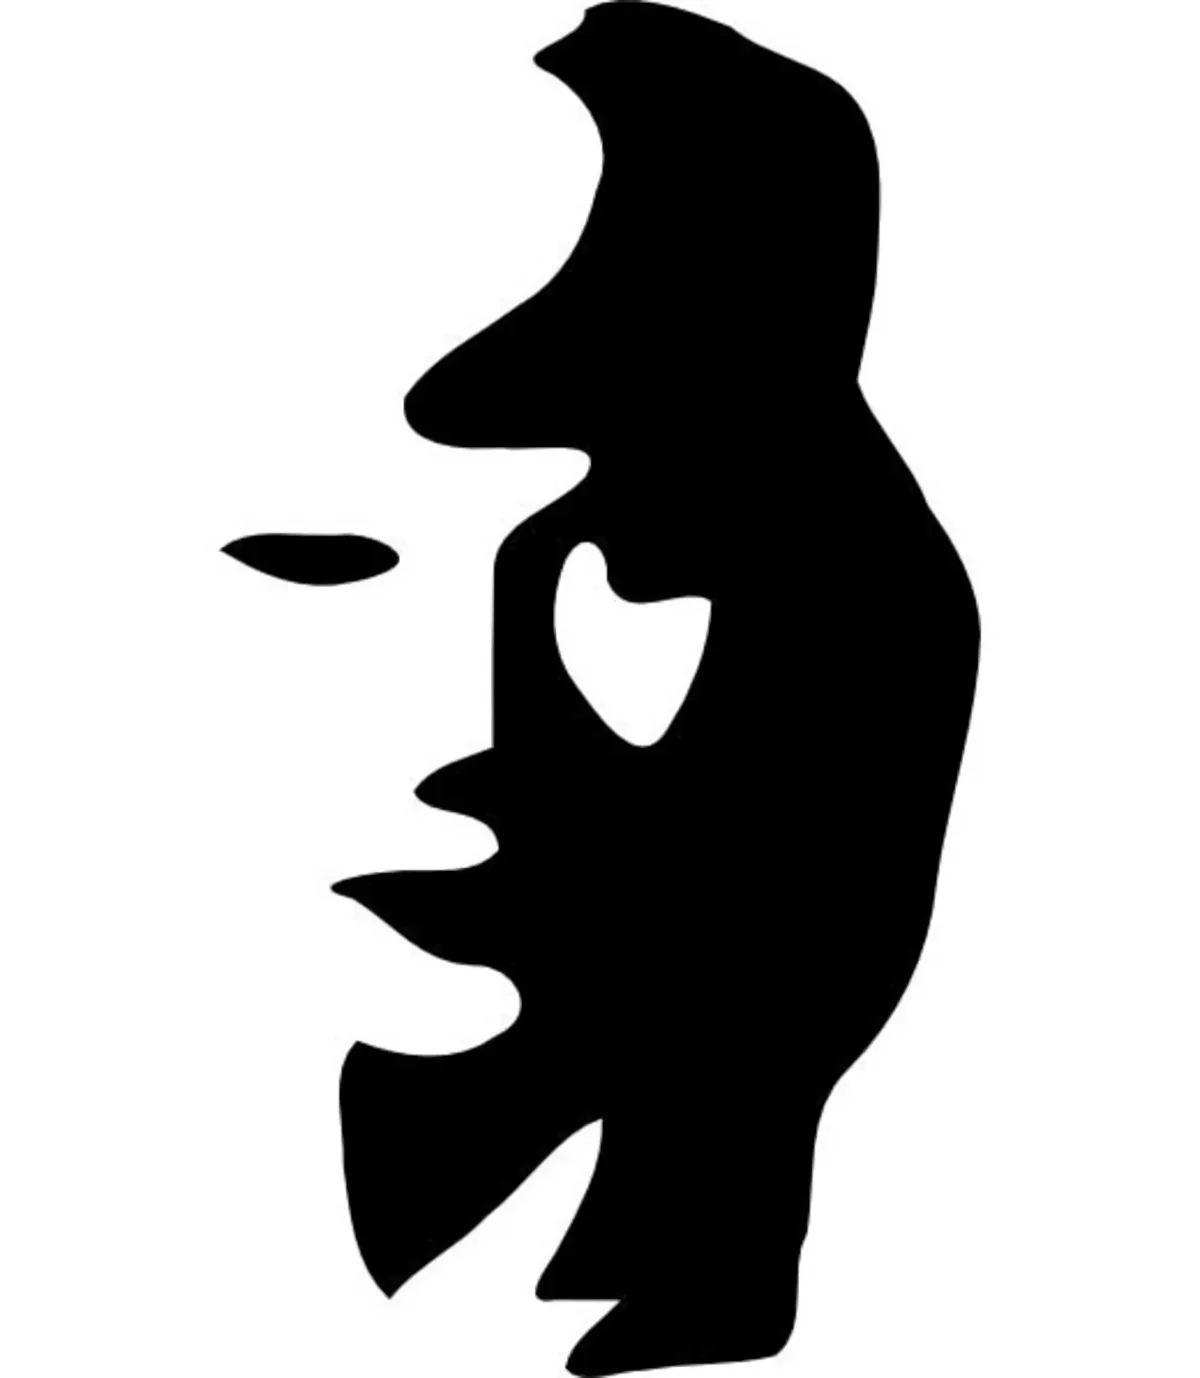 visage de femme ou silhouette d homme qui joue au trompete